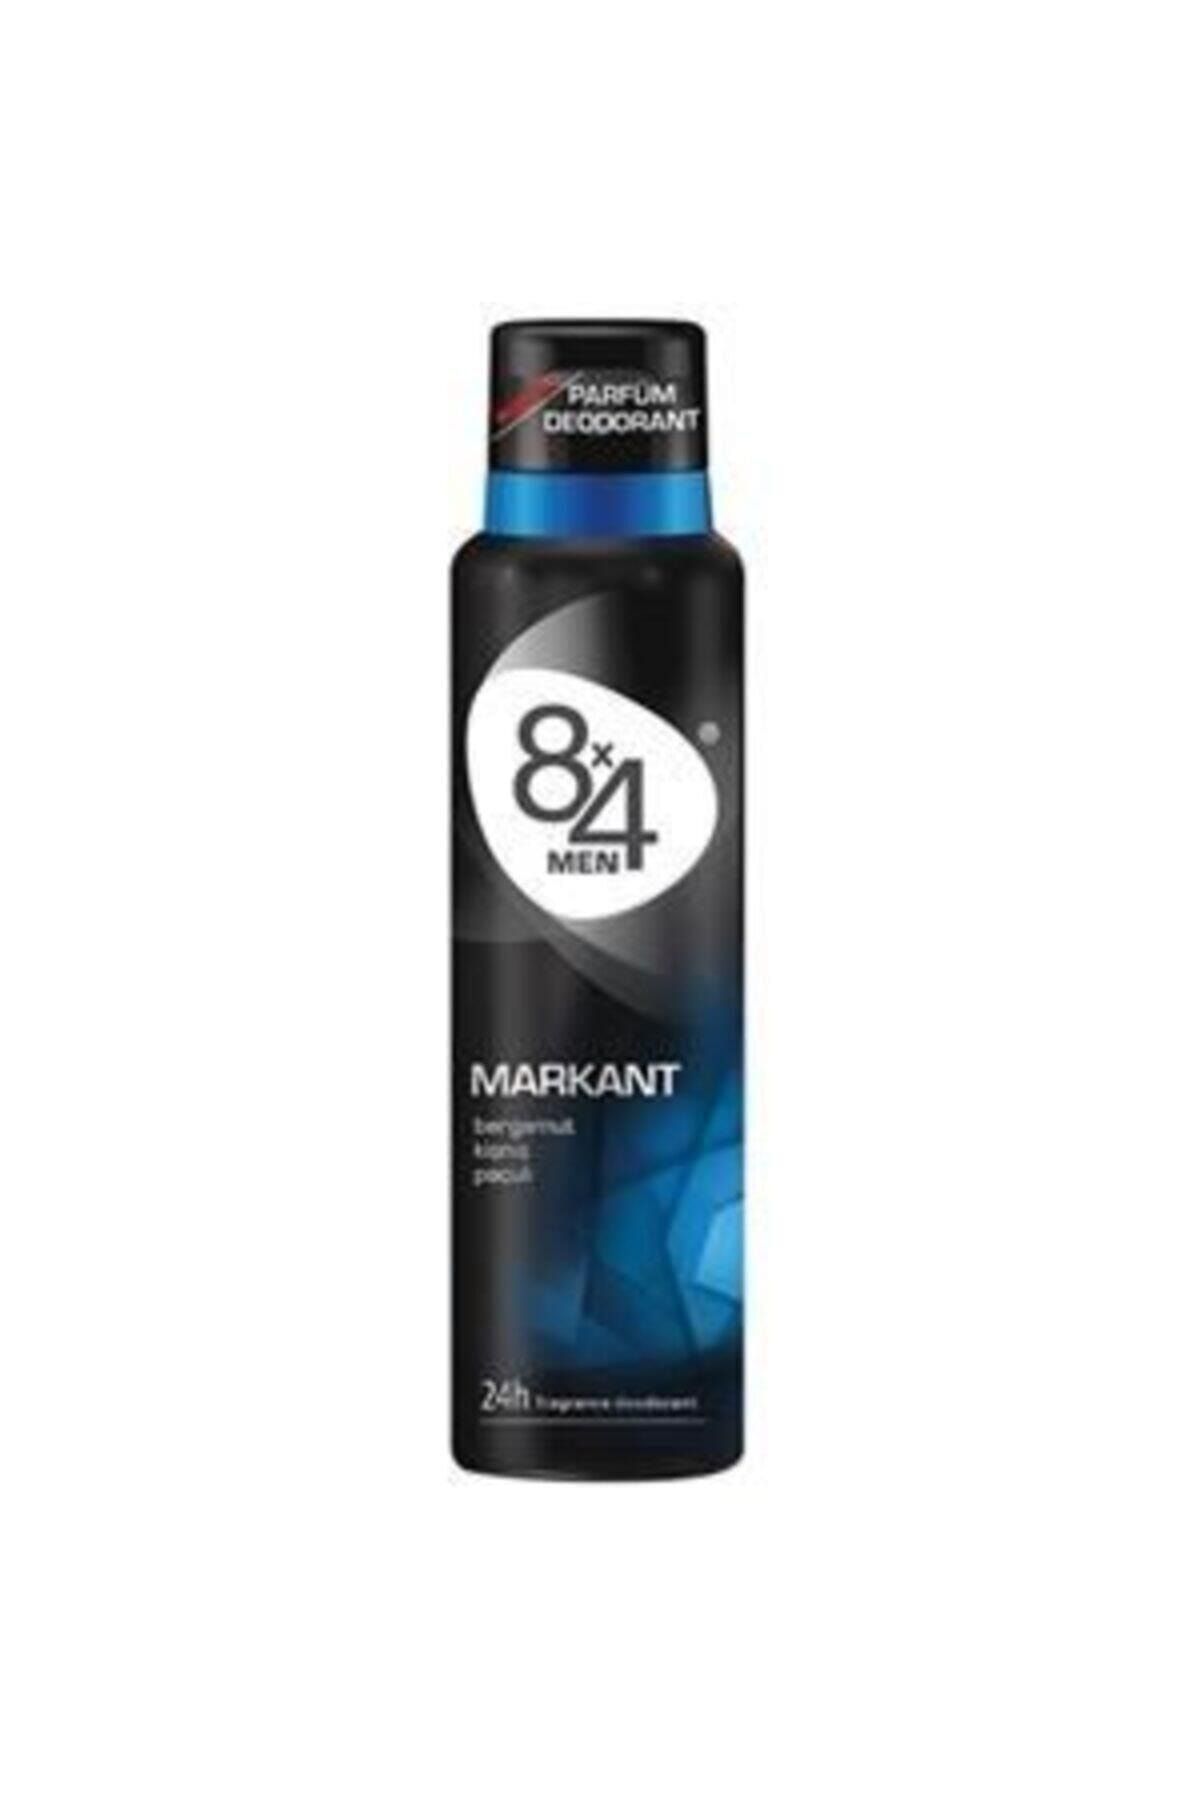 8x4 Deodorant Markant Erkek Deodorantı 150 Ml